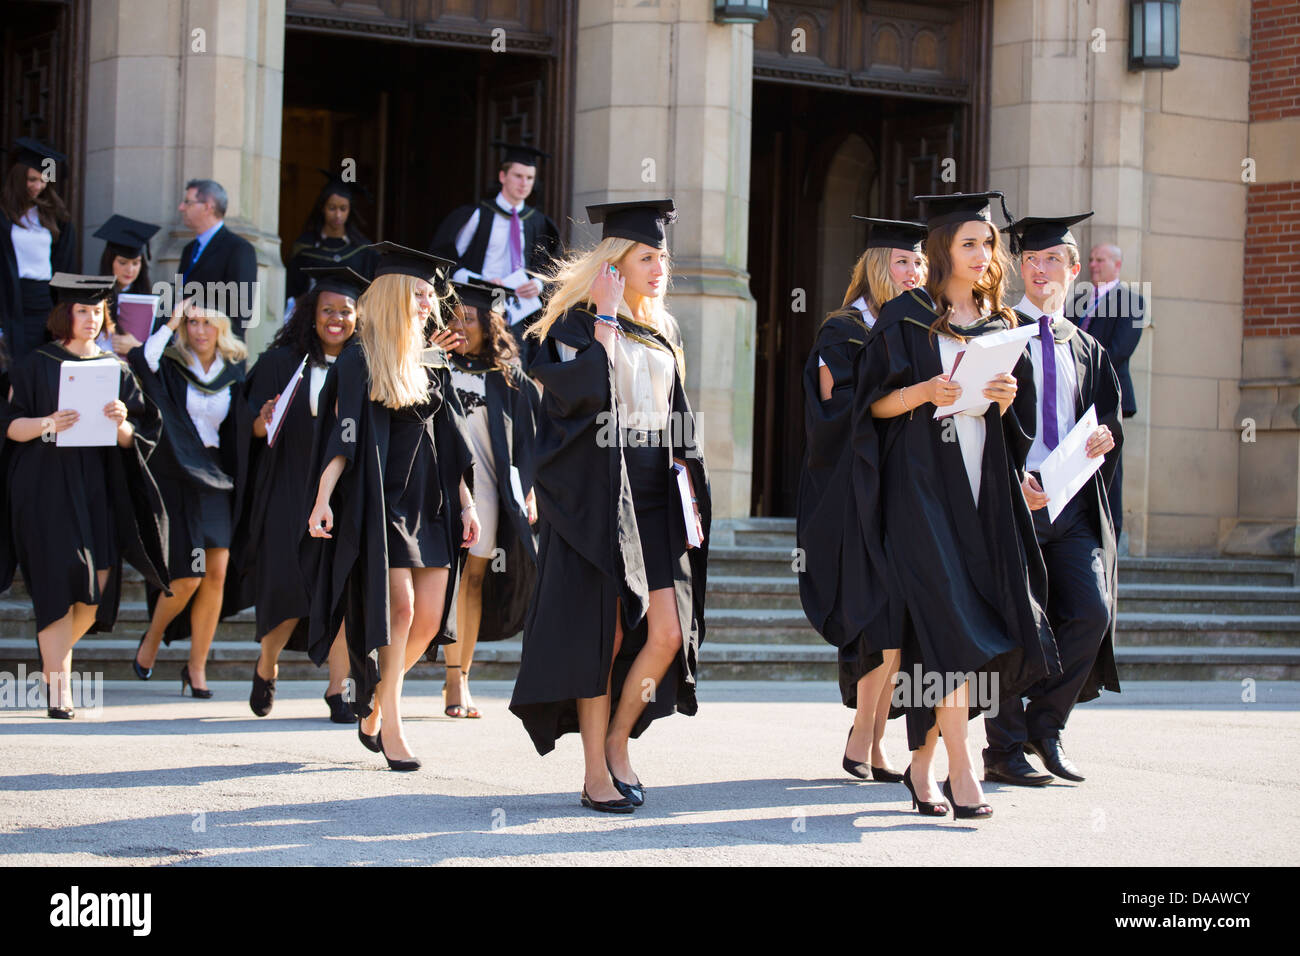 Absolventinnen und Absolventen verlassen die große Halle an der University of Birmingham, UK, nach der Abschlussfeier Stockfoto